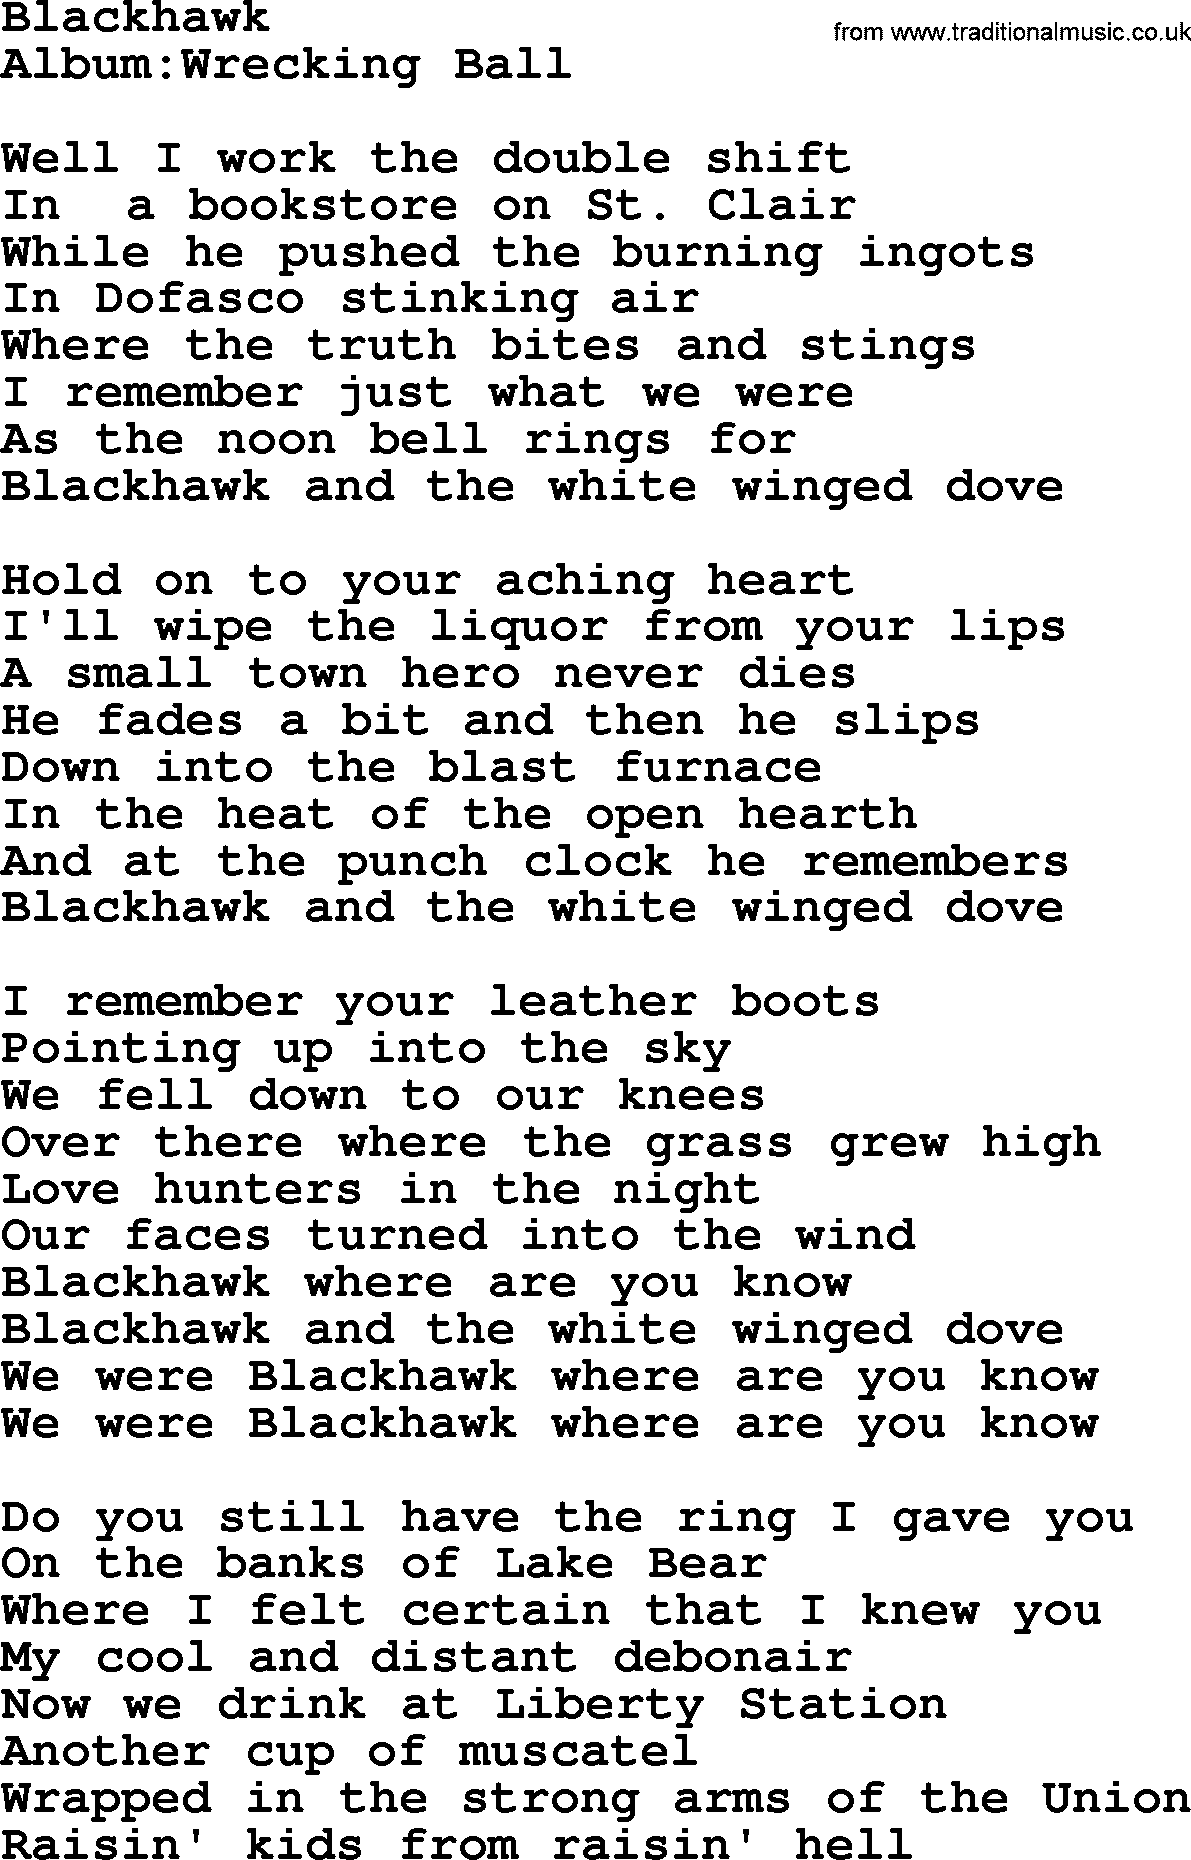 Emmylou Harris song: Blackhawk lyrics